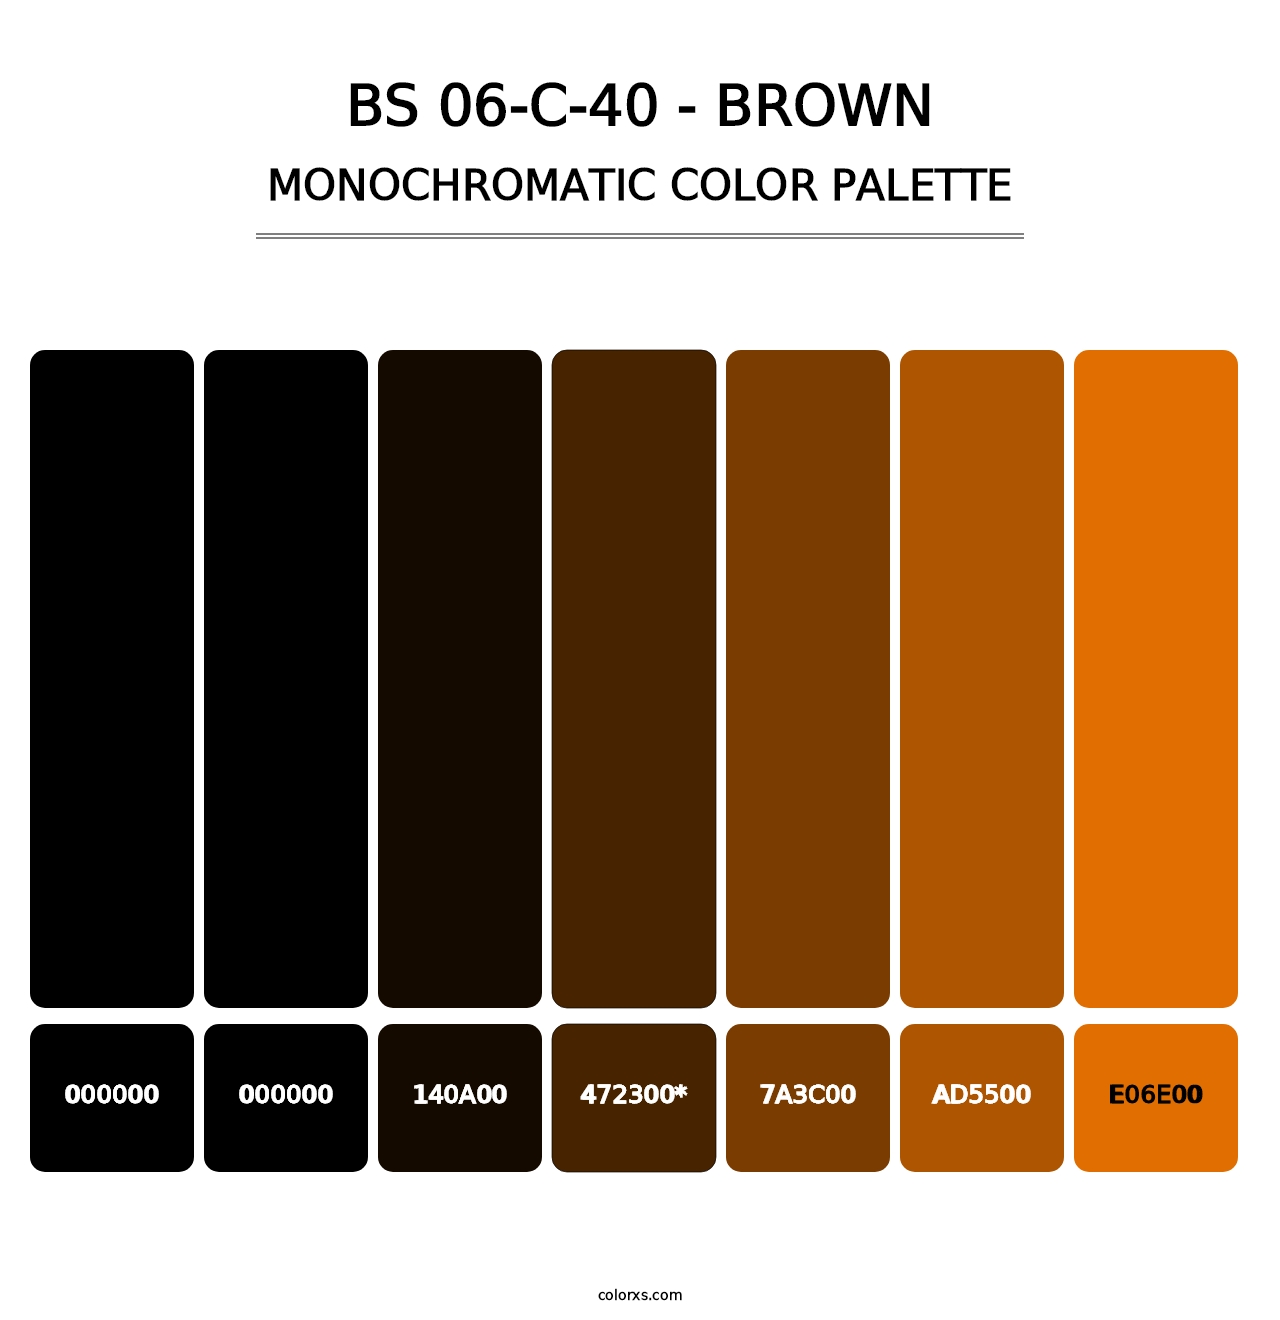 BS 06-C-40 - Brown - Monochromatic Color Palette